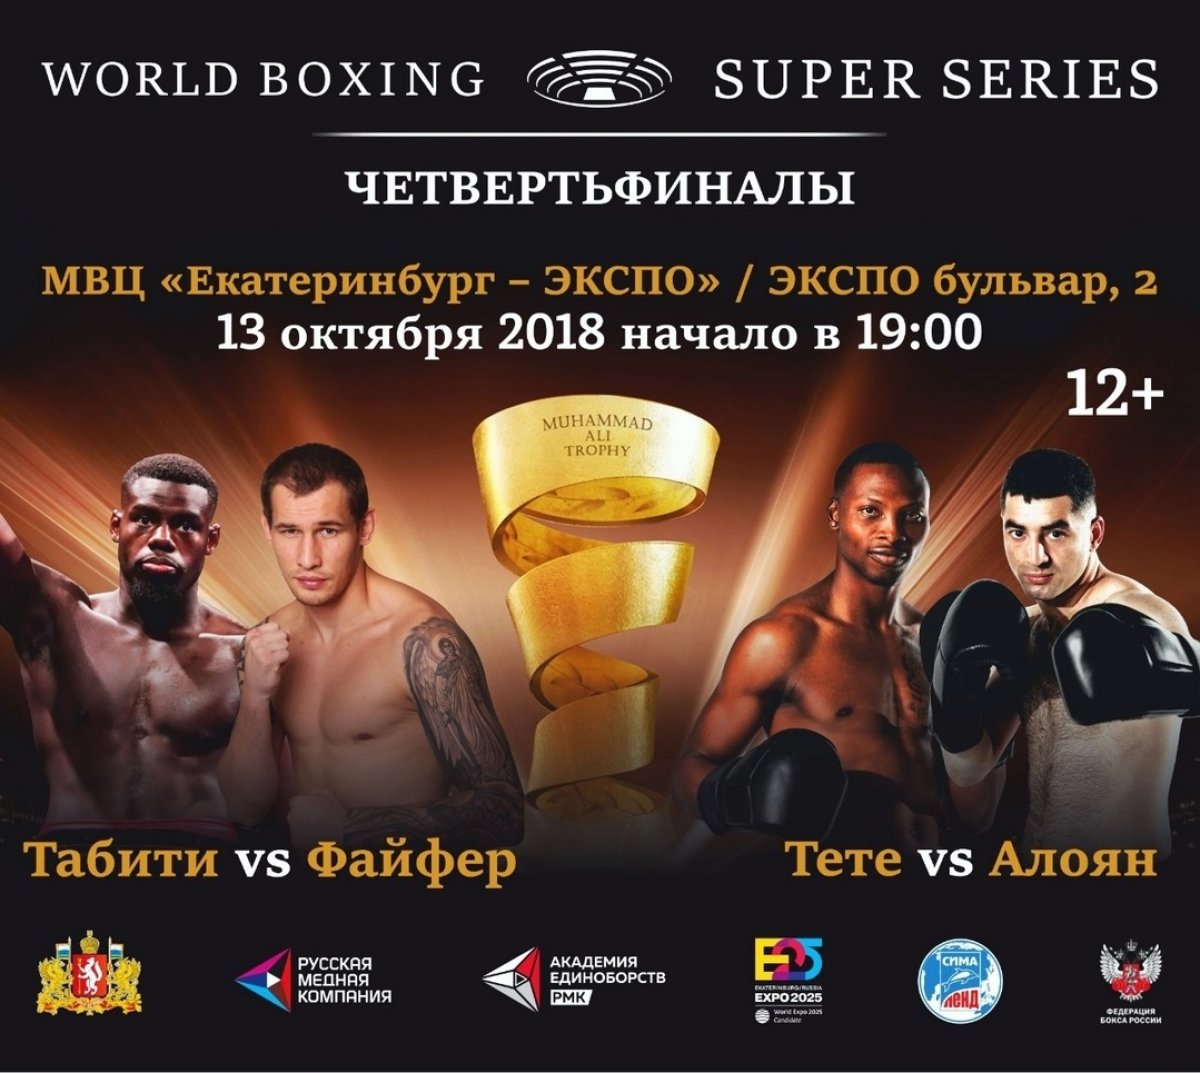 🥊13 октября 2018 года в 19.00 часов на площадке МВЦ «Екатеринбург – ЭКСПО» состоится открытие Второго сезона Всемирной боксерской супер серии (WBSS) организацией сразу двух Четвертьфинальных поединков. 🤼‍♂️